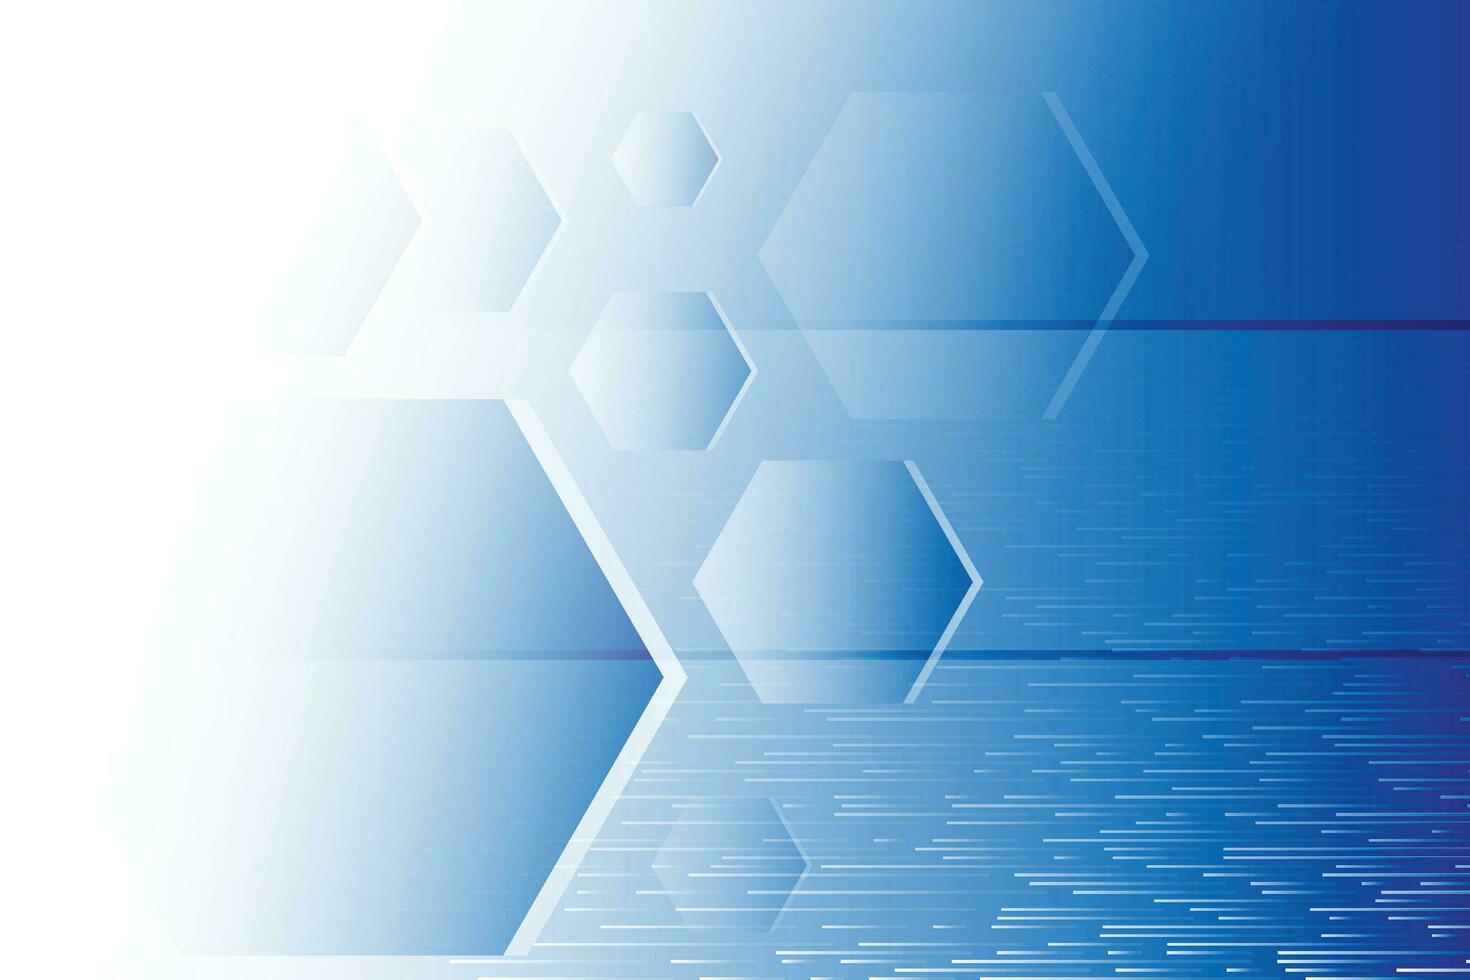 abstrakt blå och vit teknologi bakgrund med hexagonal form. vektor illustration.